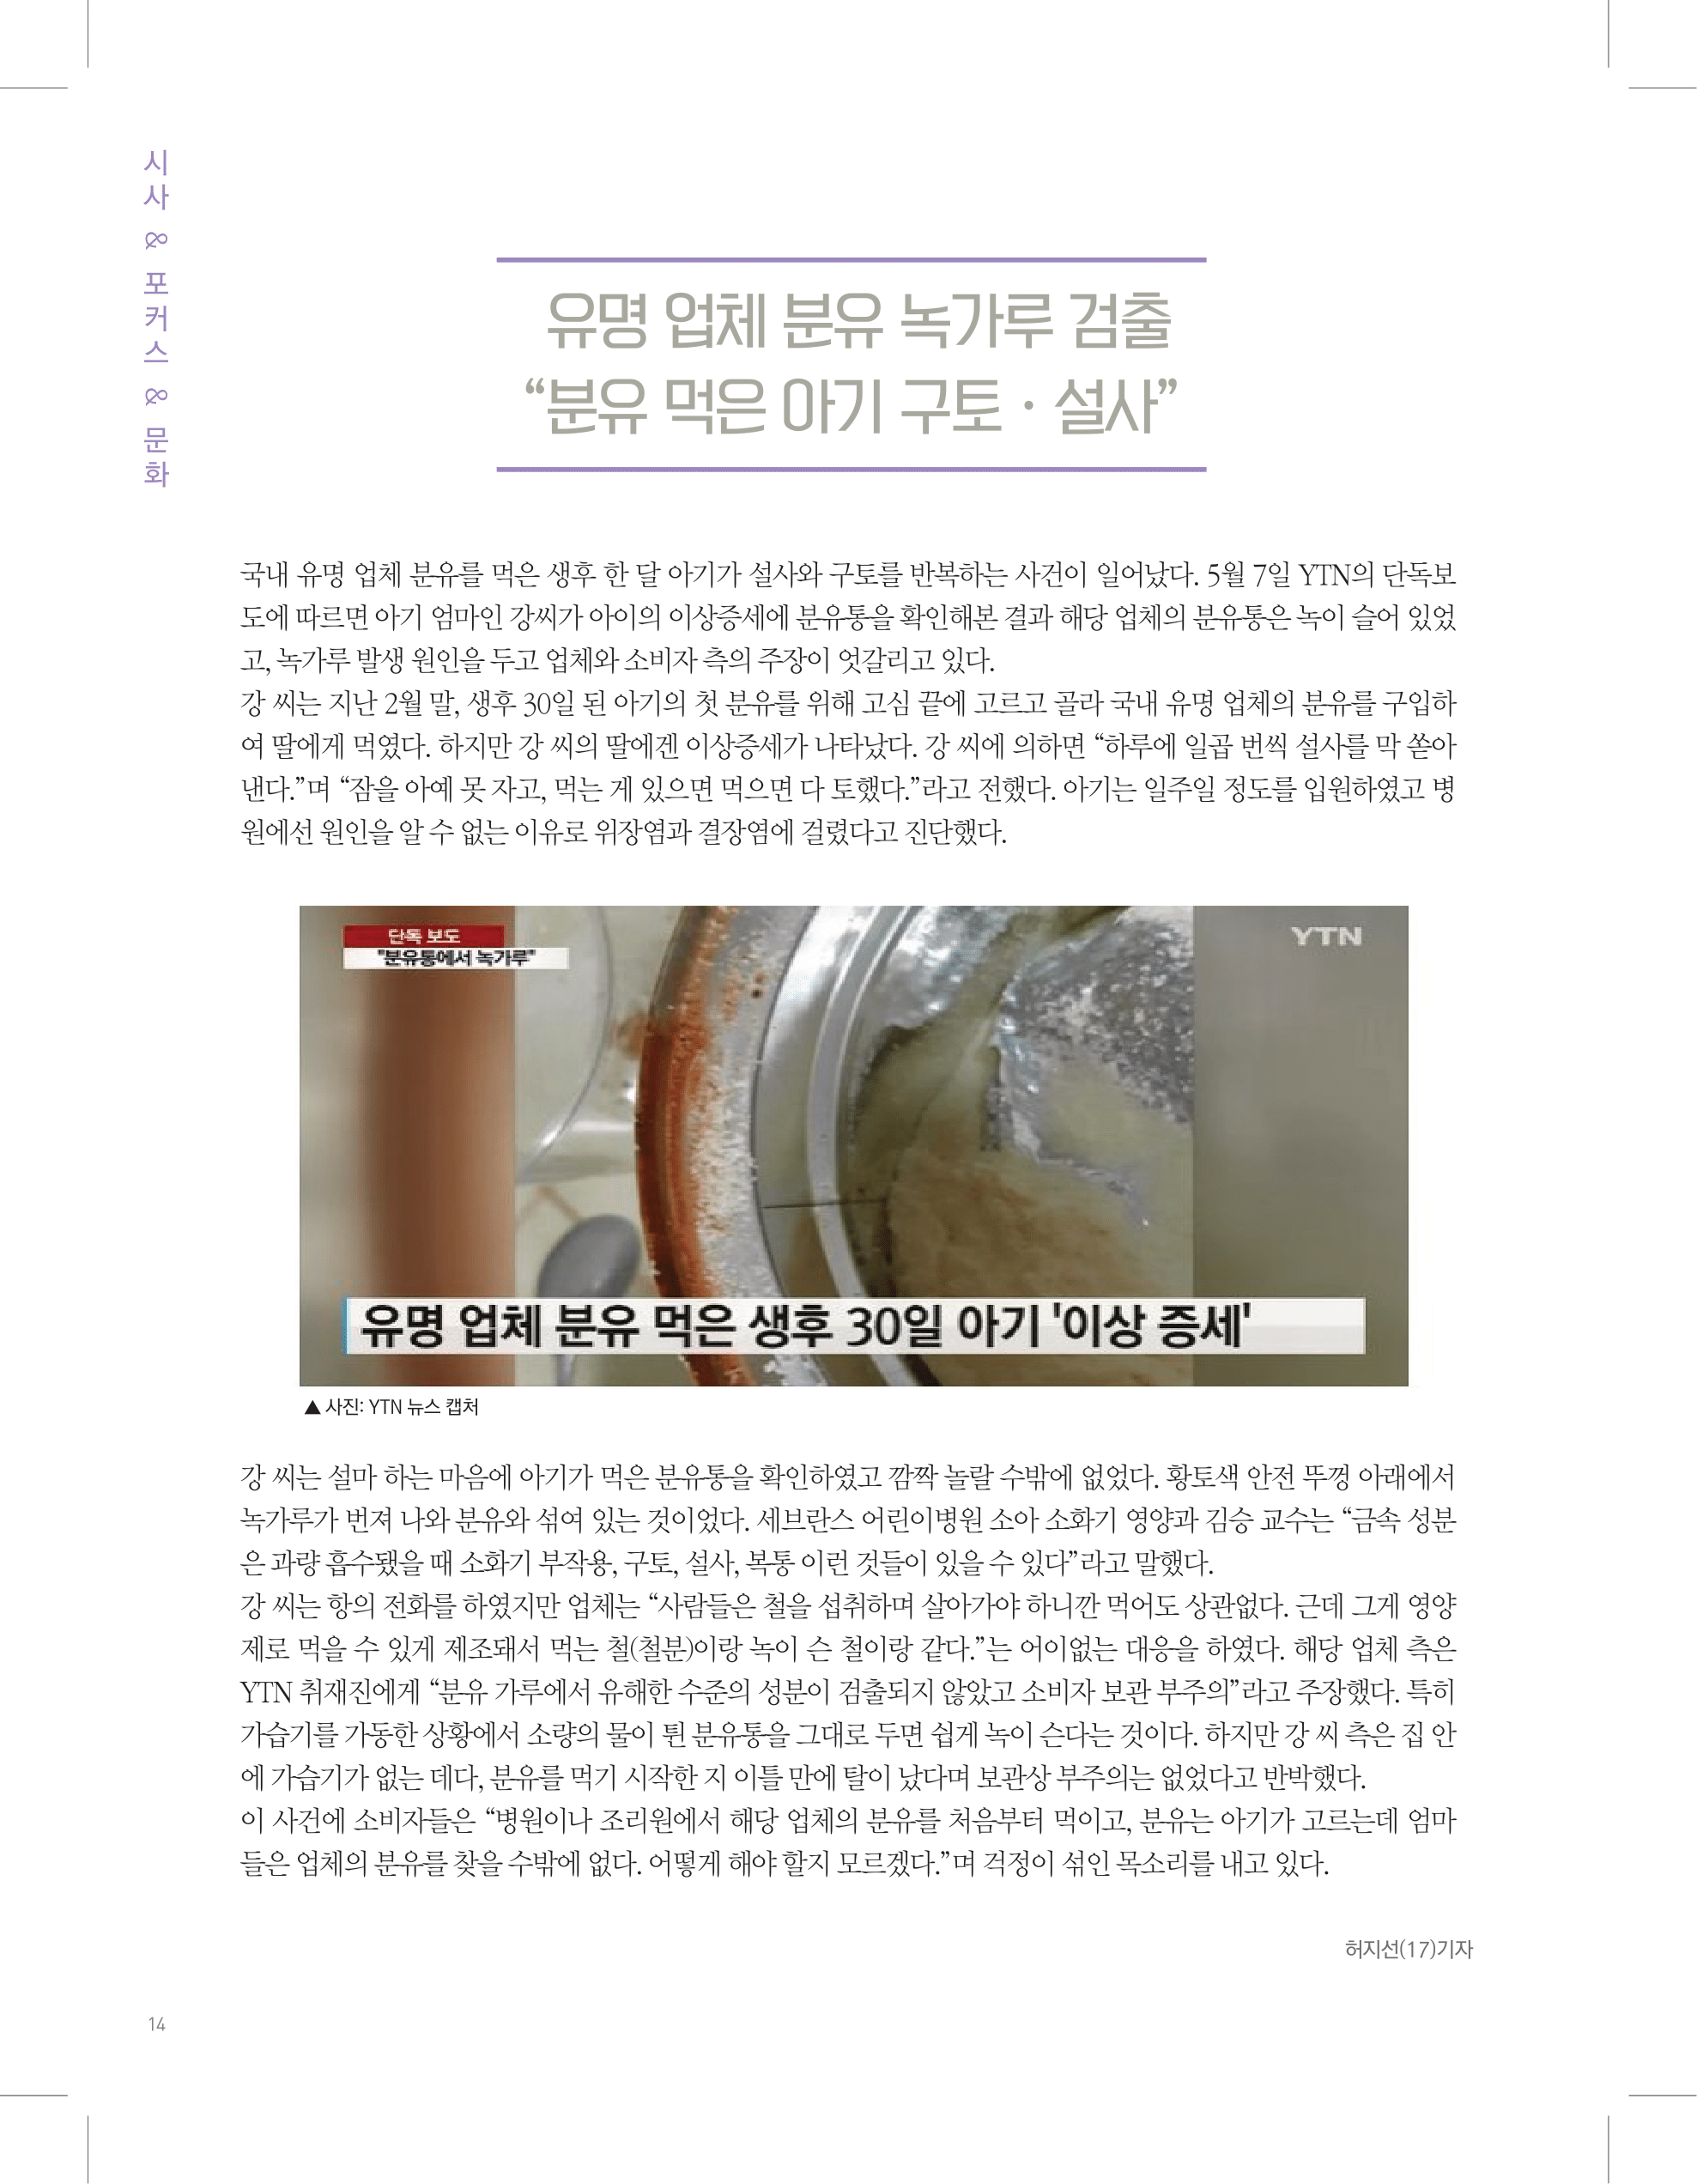 뜻새김 신문 73호 14